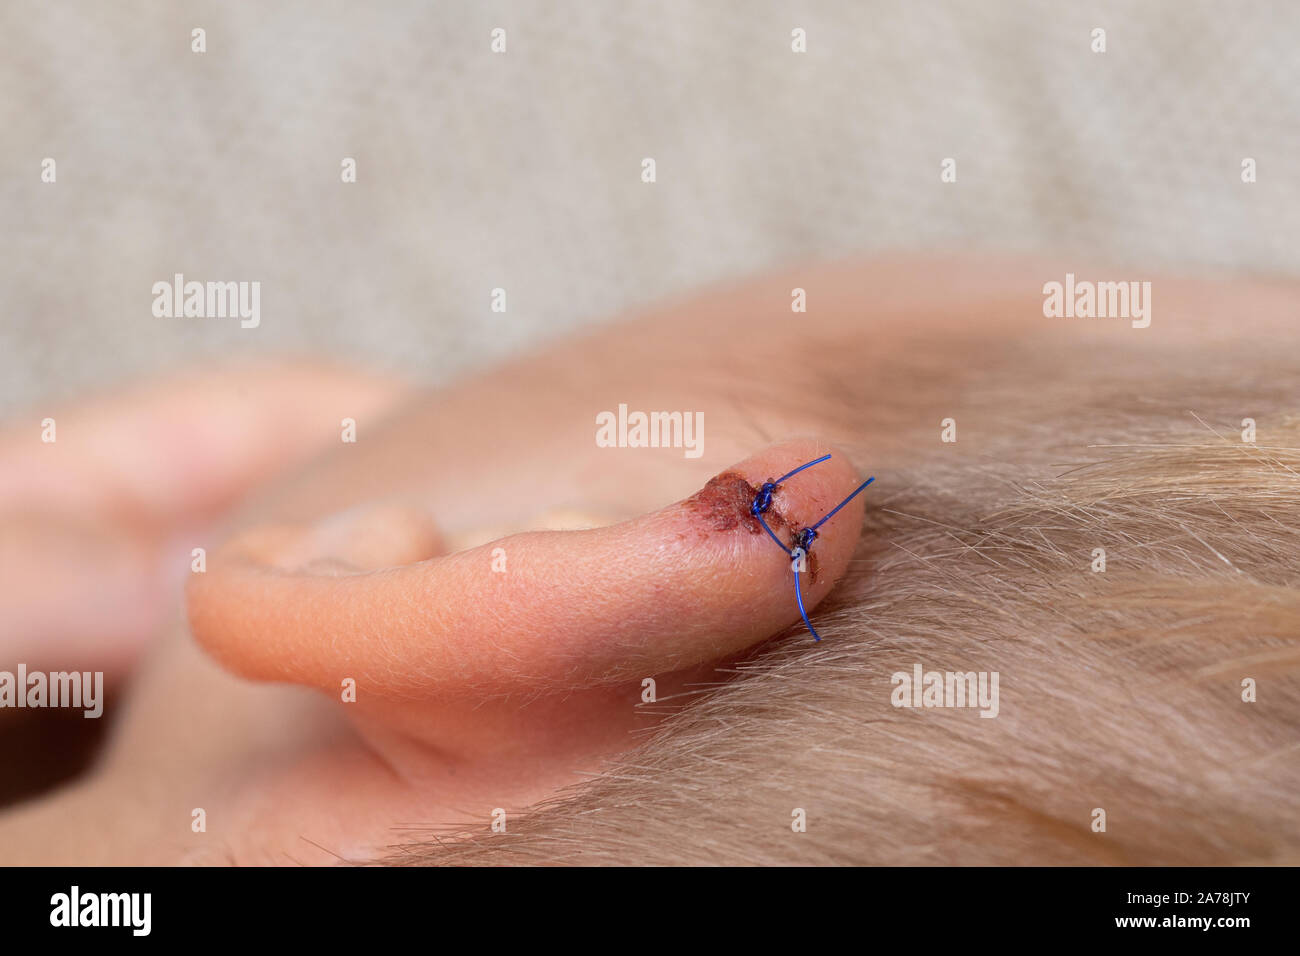 Die Wunde genäht werden. Medizinische, chirurgische Konzept. Gerissenen  Wunden mit Stichen auf dem Kind Ohr. close-up von Nervengewebe menschliche  Ohr mit Naht Stockfotografie - Alamy